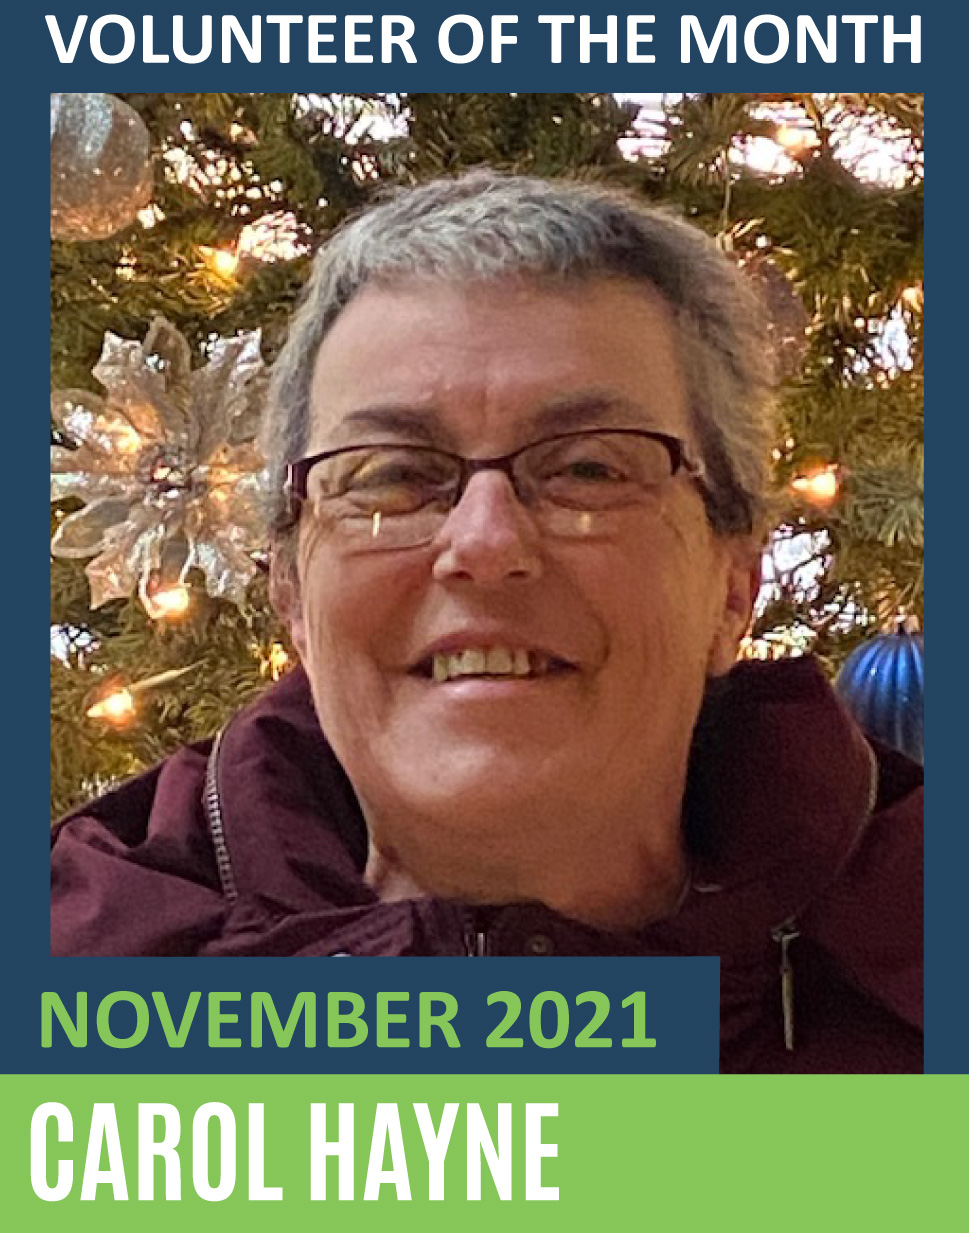 November 2021 Volunteer of the Month - Carol Hayne